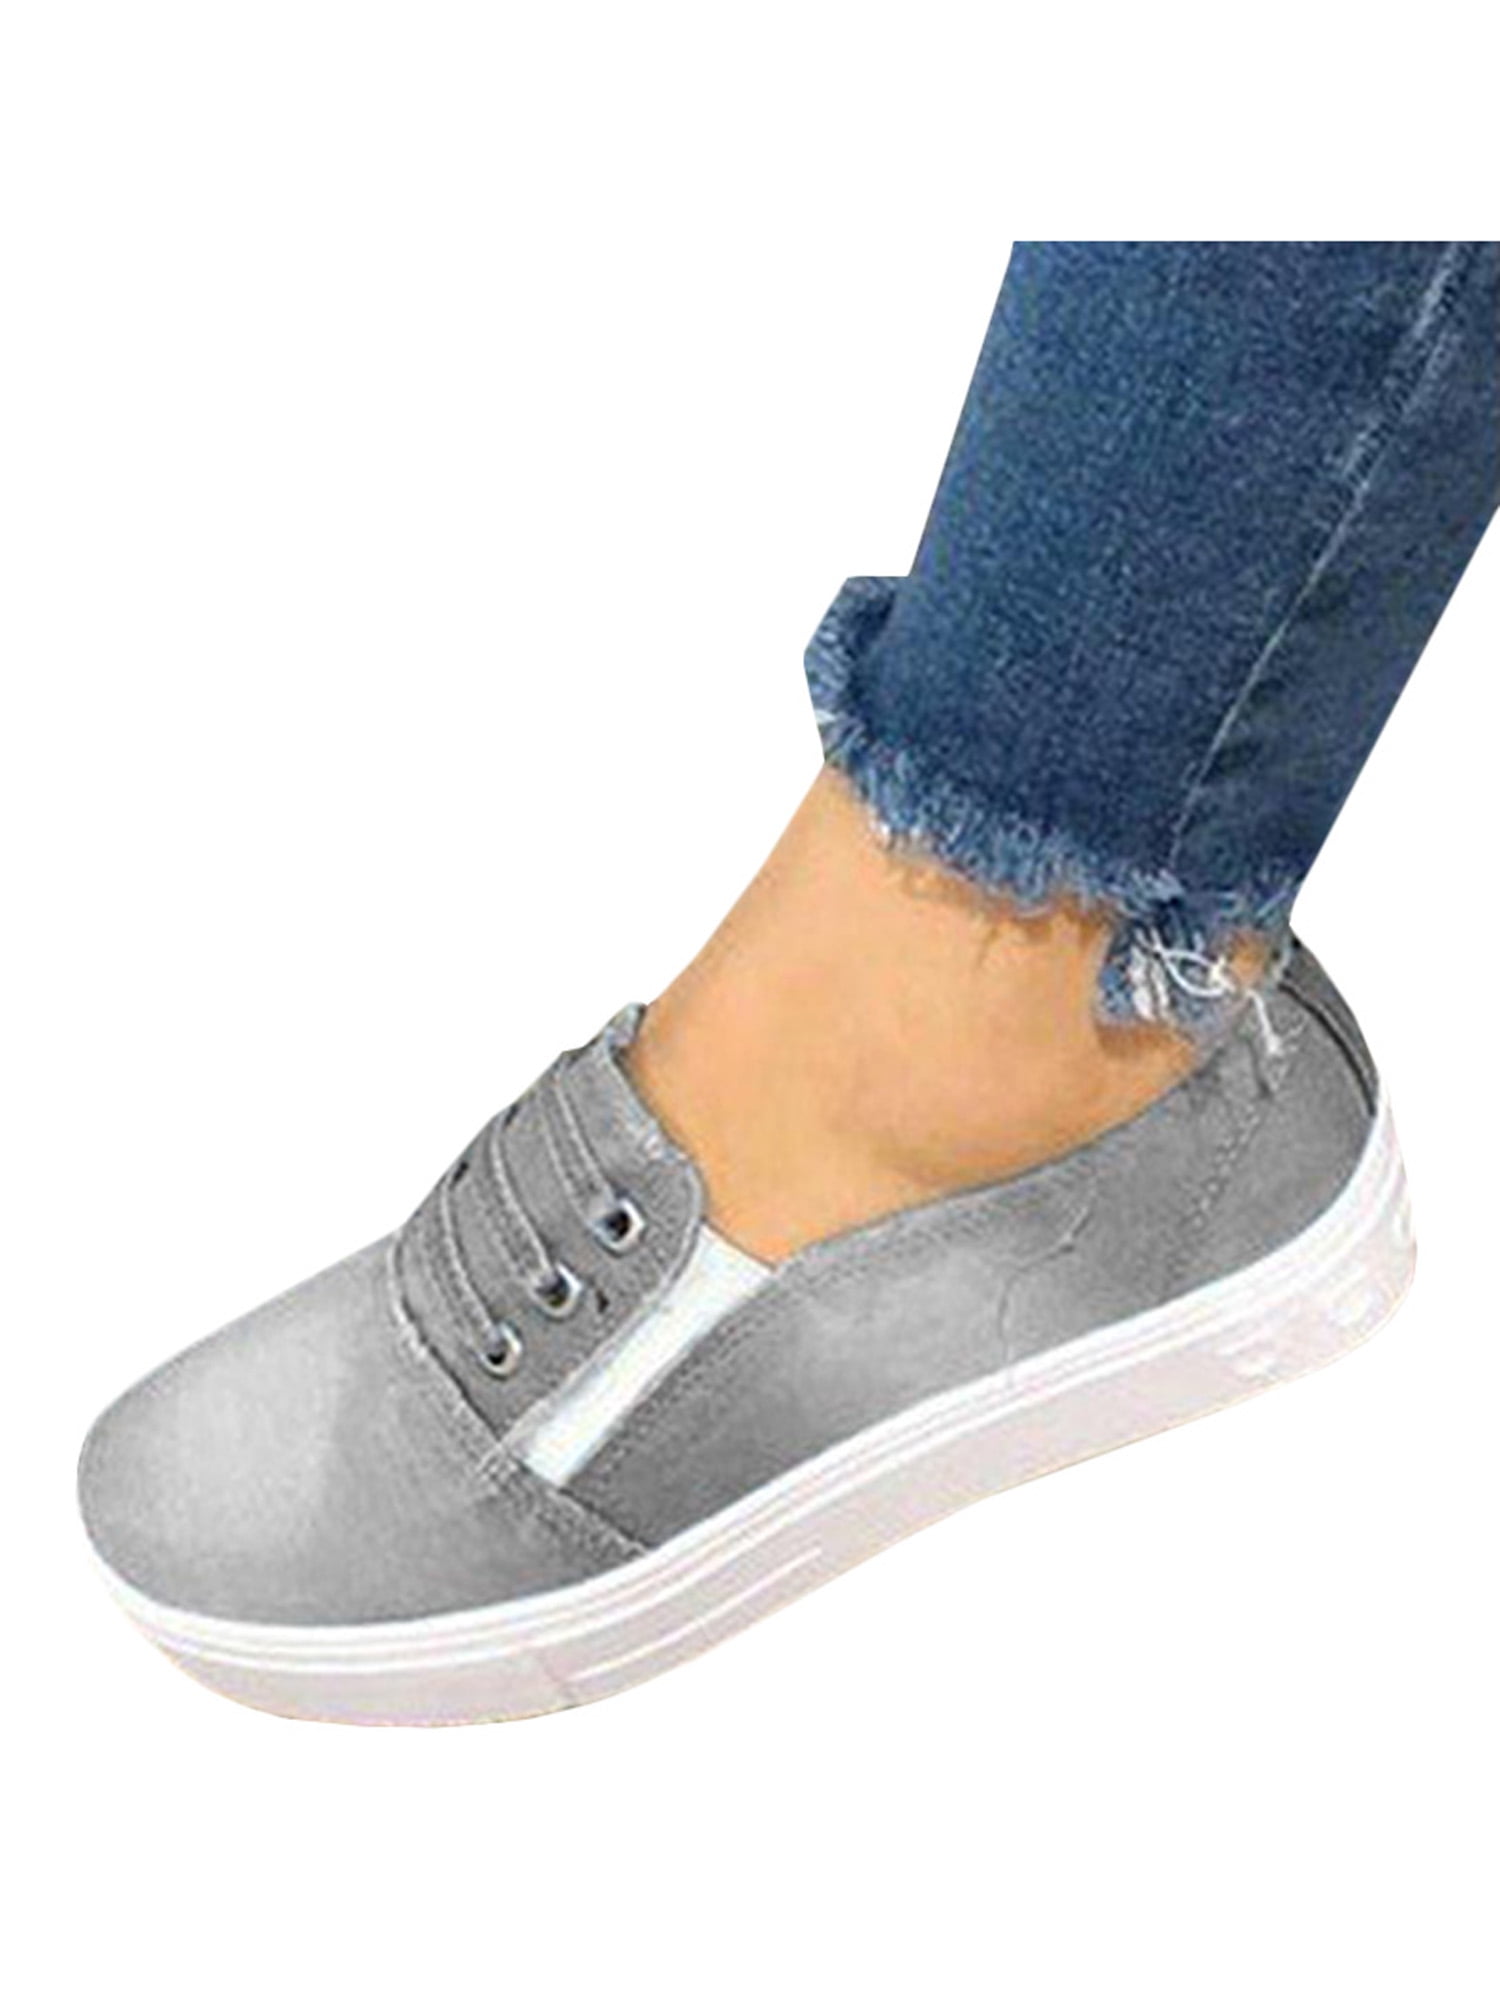 women's gray slip on shoes